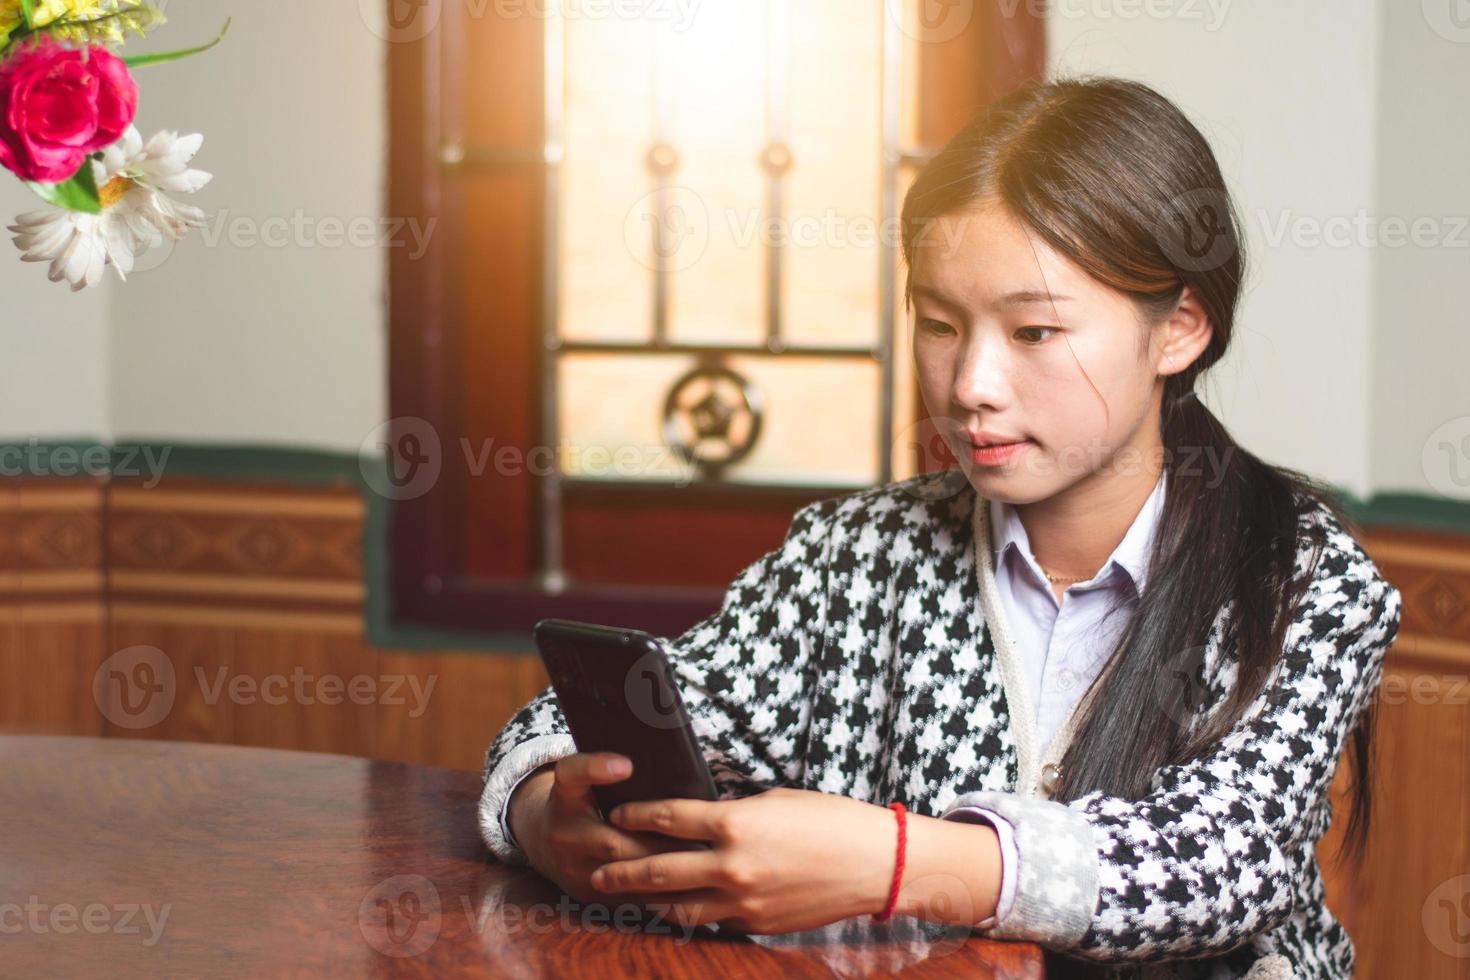 eine junge studentin online chattet mit ihrer freundin auf handy, social media und chat-verbindungskonzept, sonnenlicht durch die fenster kopiert platz für individuellen text foto